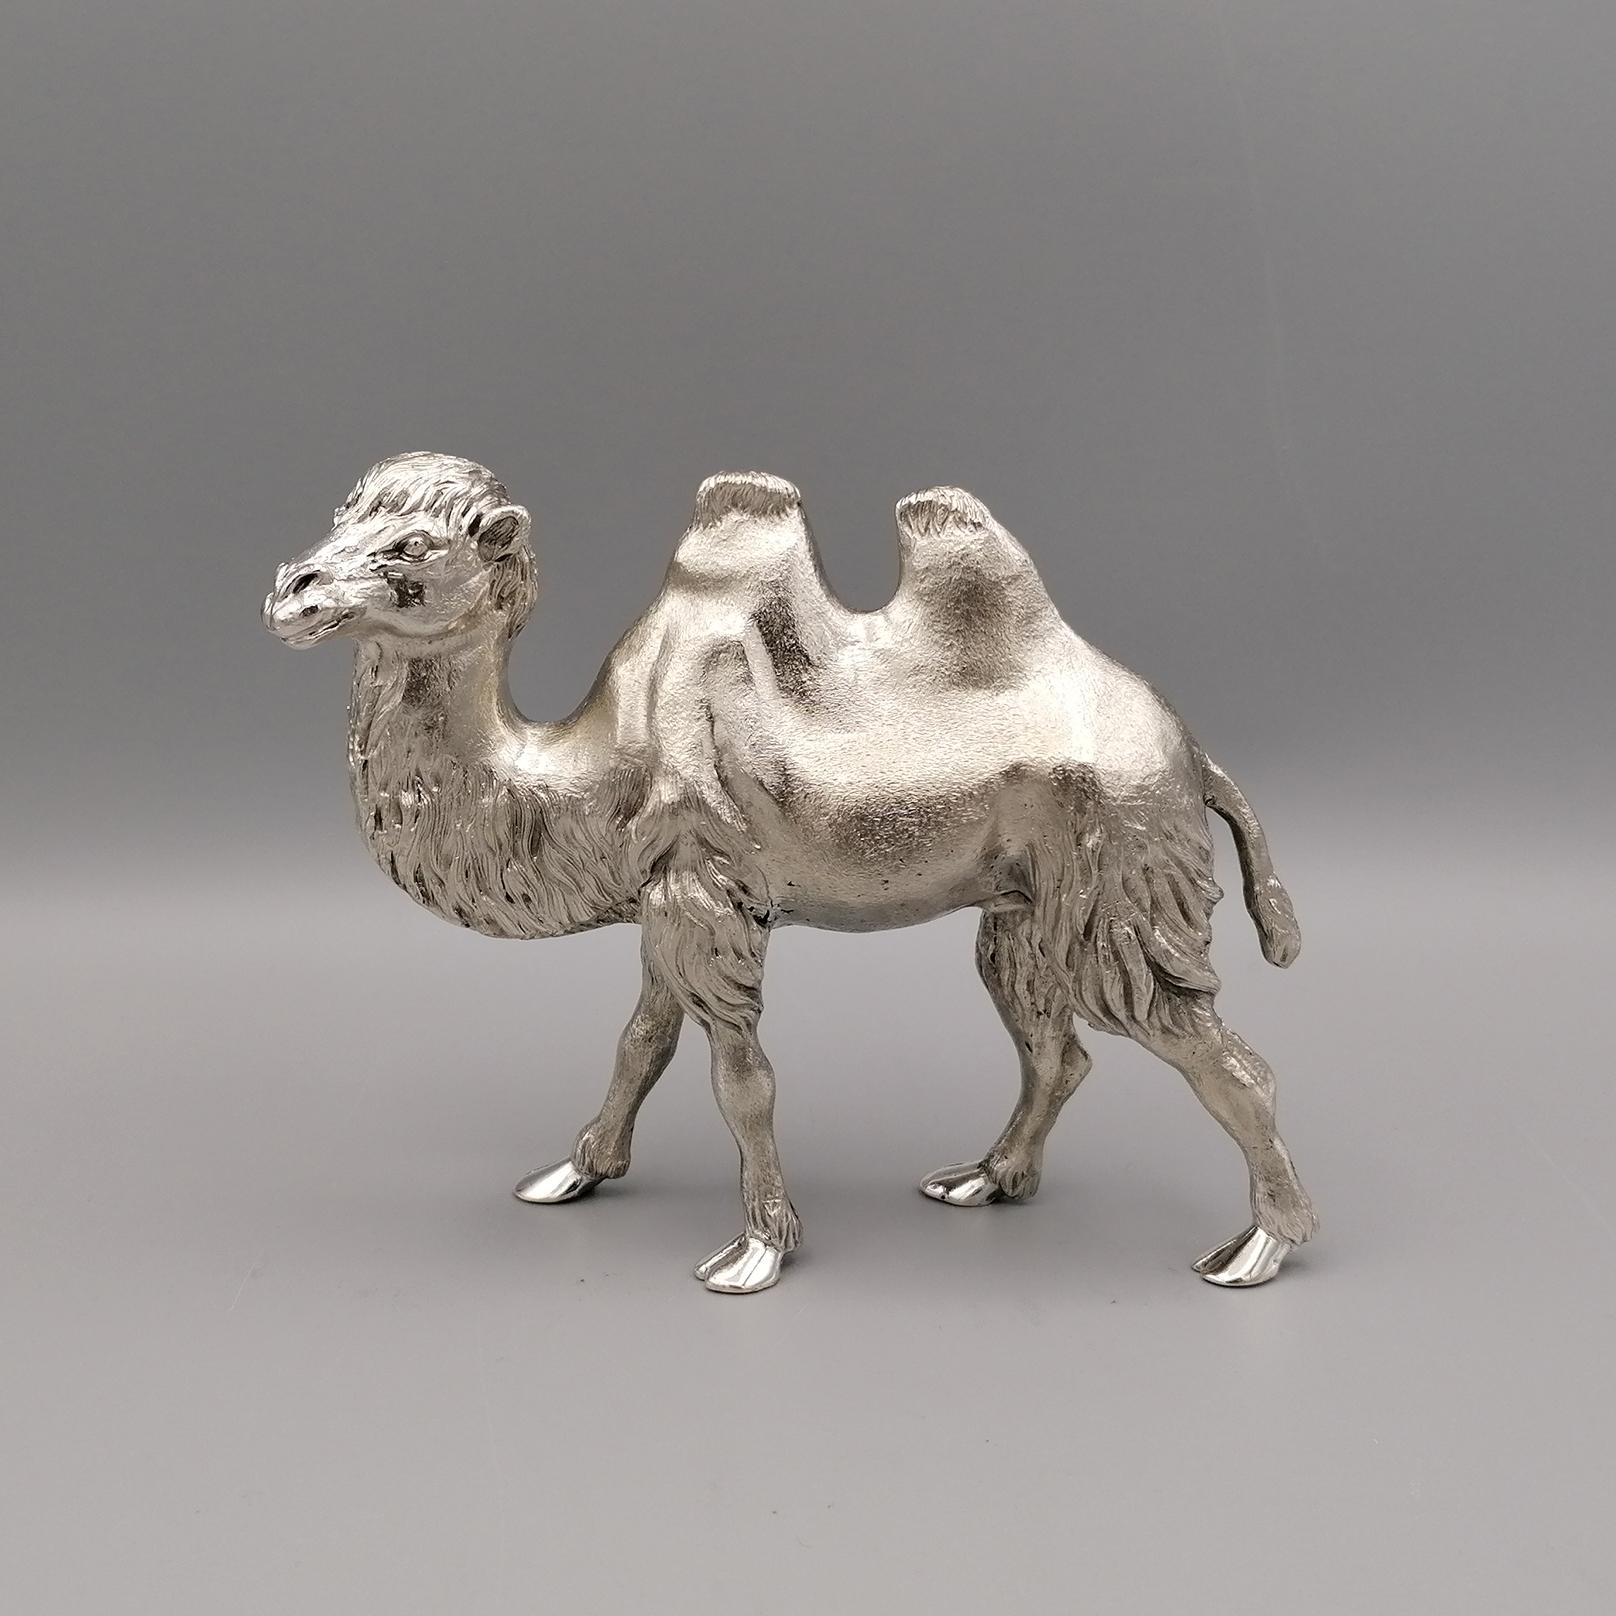 Chameau en argent massif 800.
La sculpture a été réalisée à l'aide de la technique du moulage, puis finie entièrement à la main par des ciseleurs experts pour rendre la fourrure du chameau réaliste et la sculpture dans son ensemble.

Par